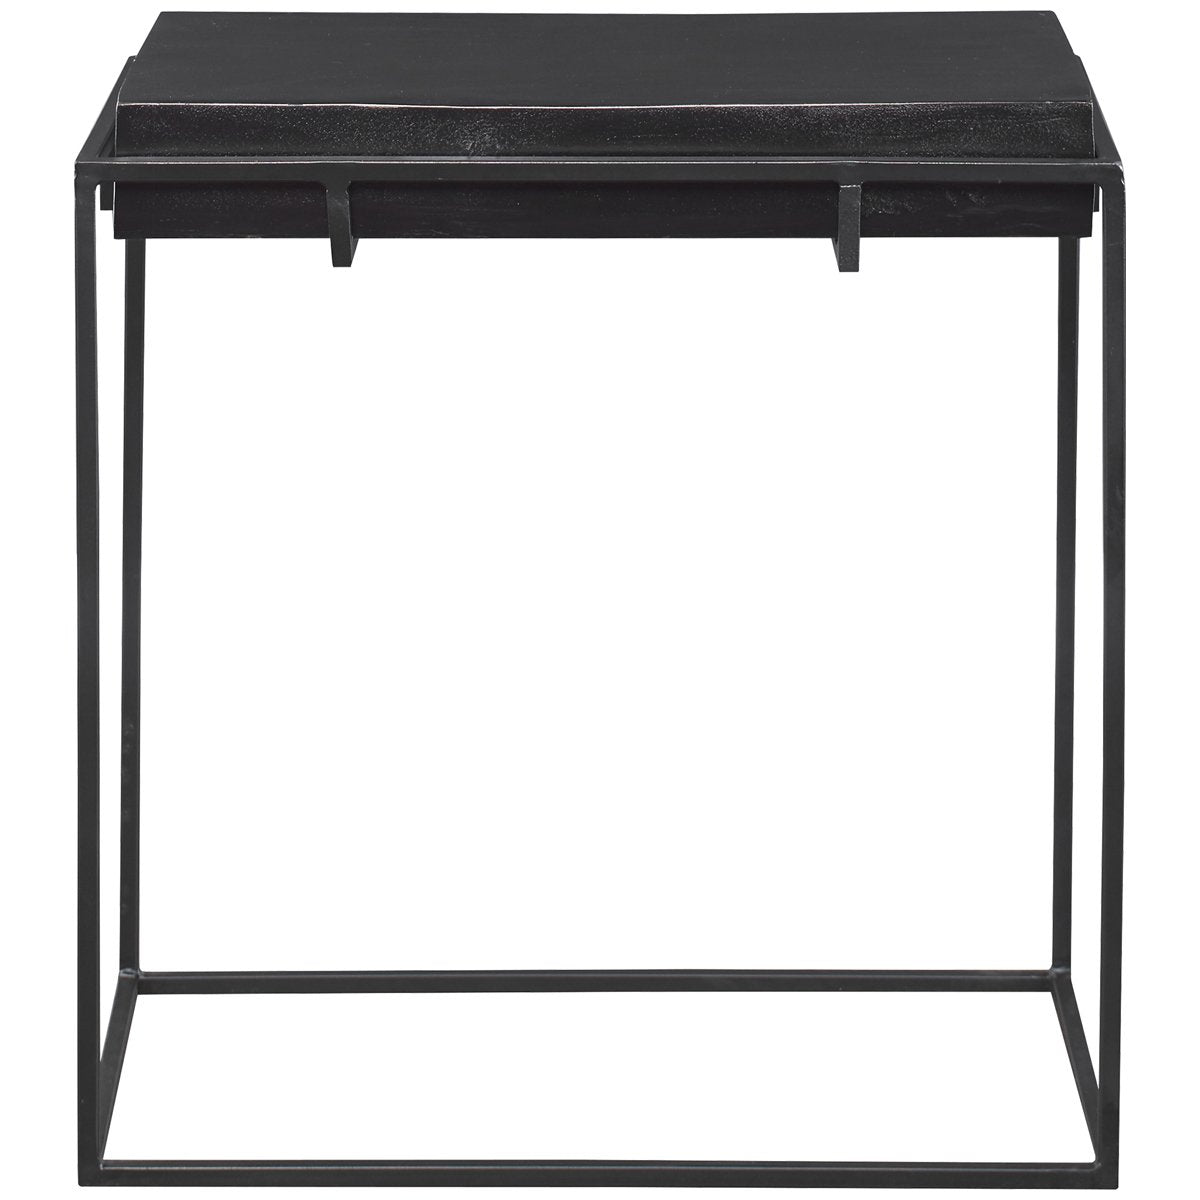 Uttermost Telone Modern Black Side Table